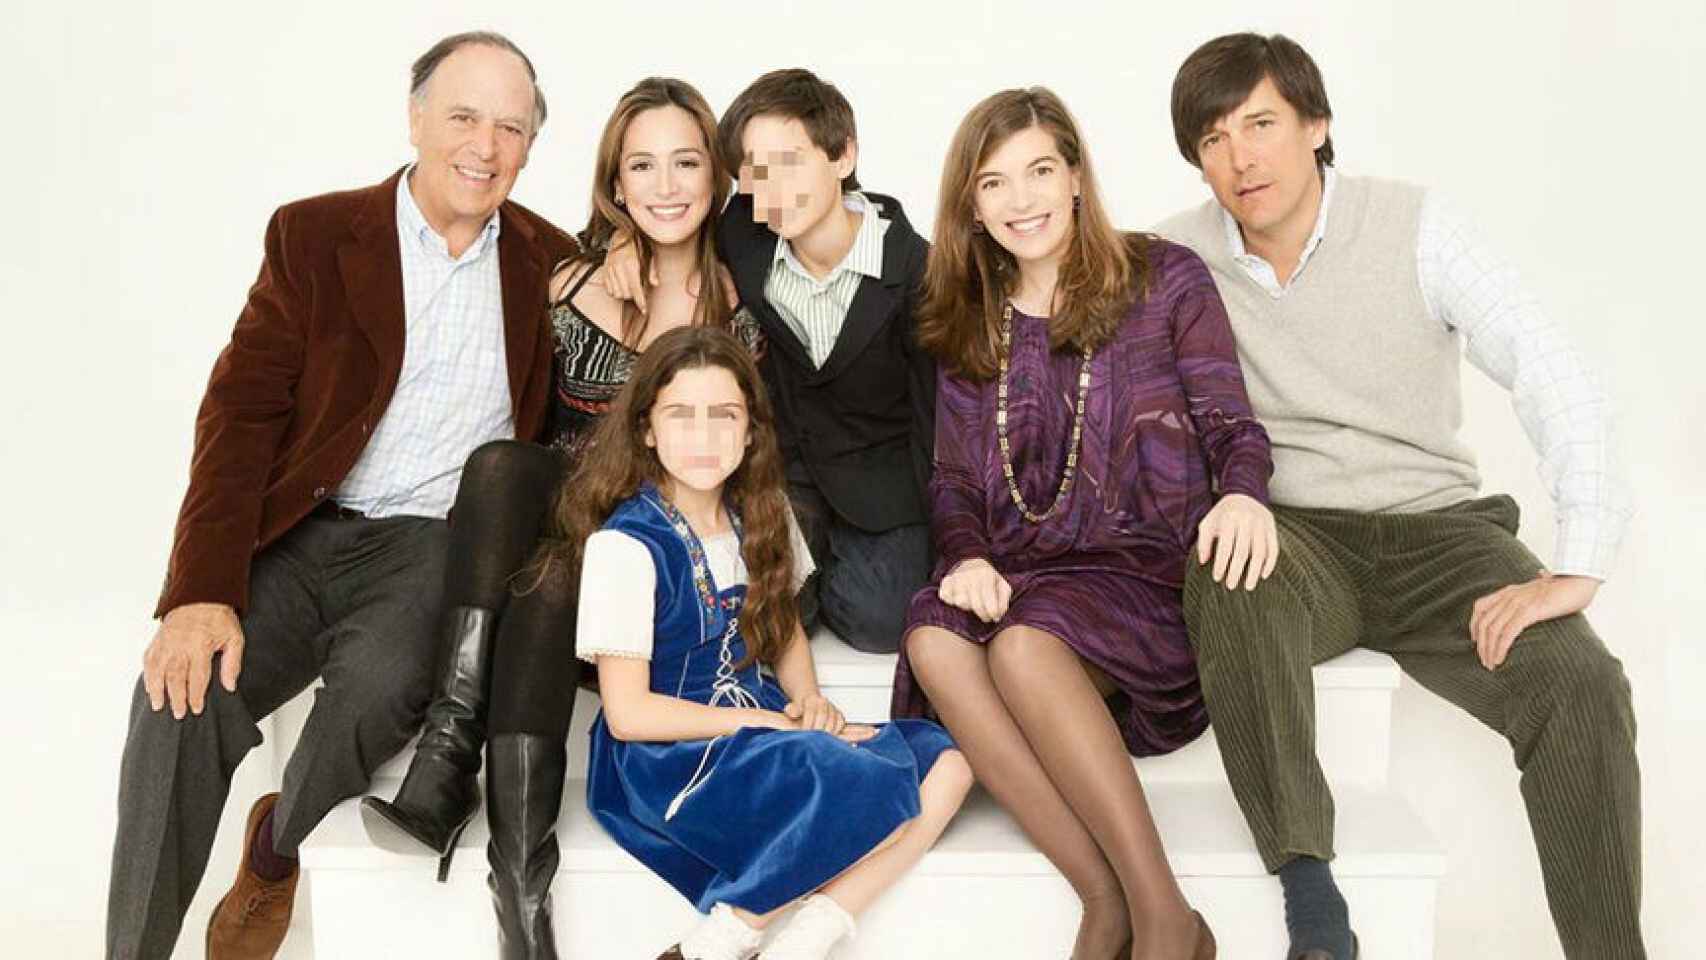 Imagen que ha acompañado el comunicado: Carlos Falcó con sus cinco hijos.